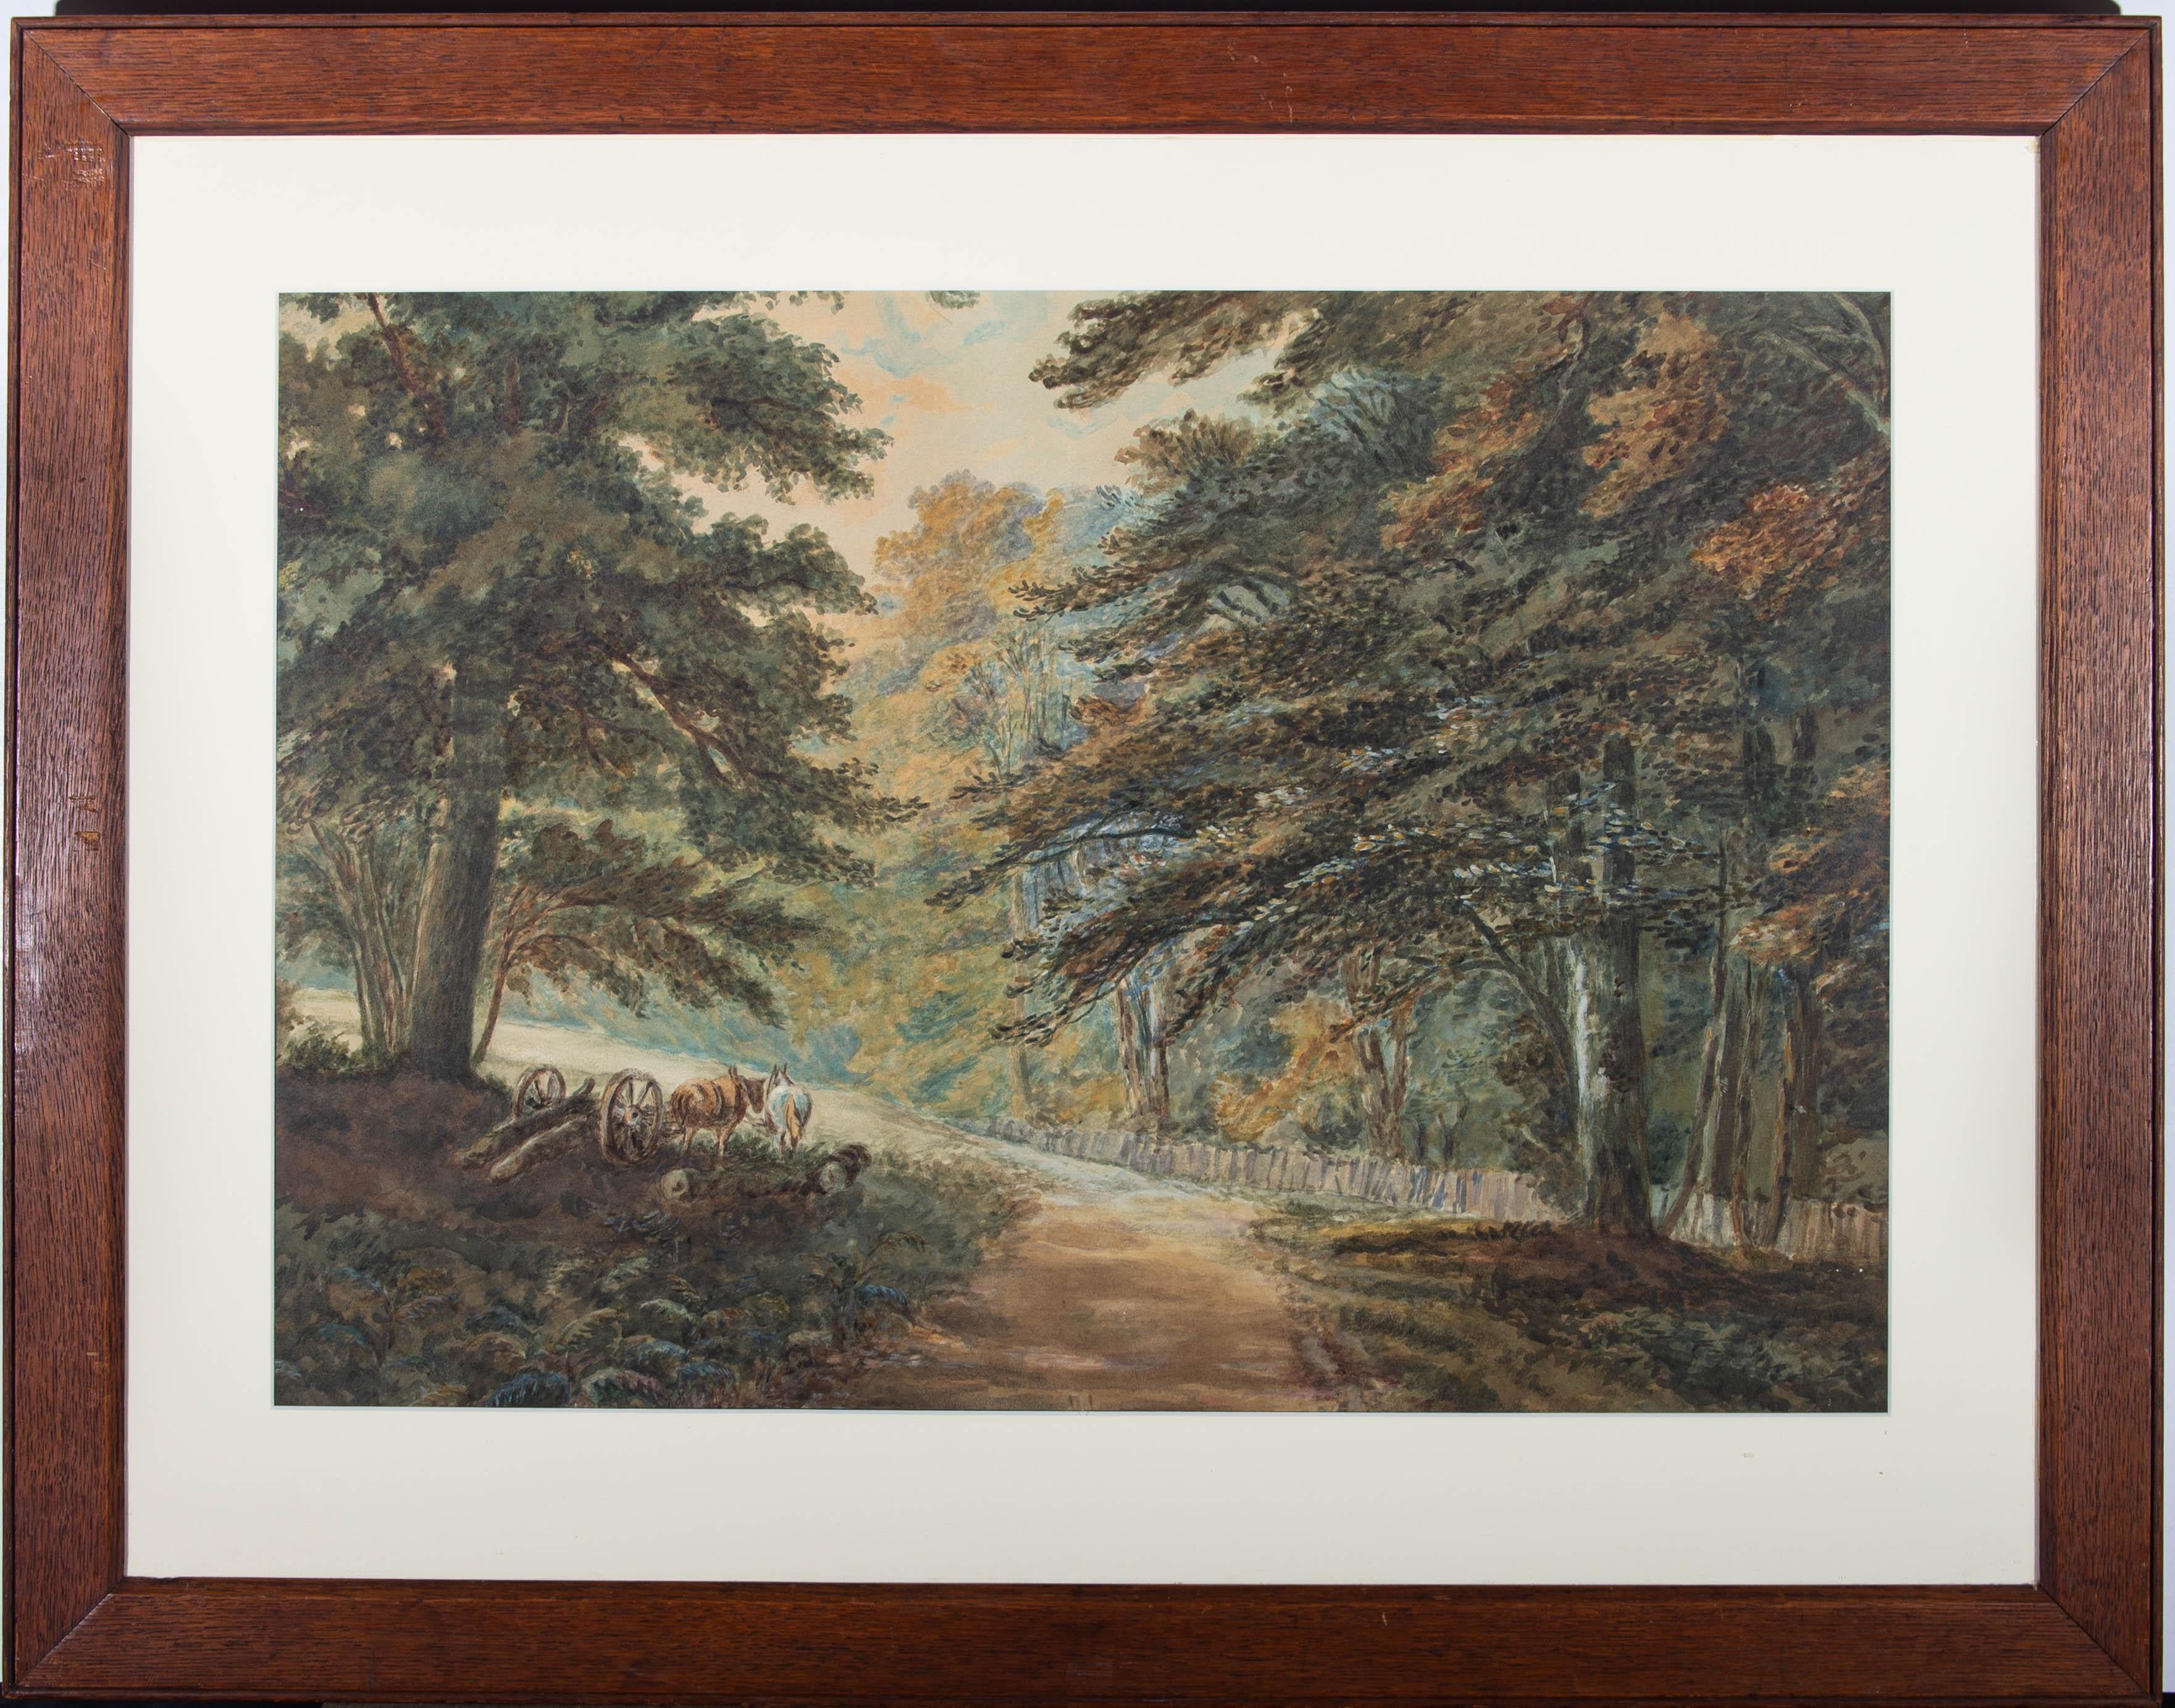 Unknown Landscape Art - 19th Century Watercolour - Logging Horses